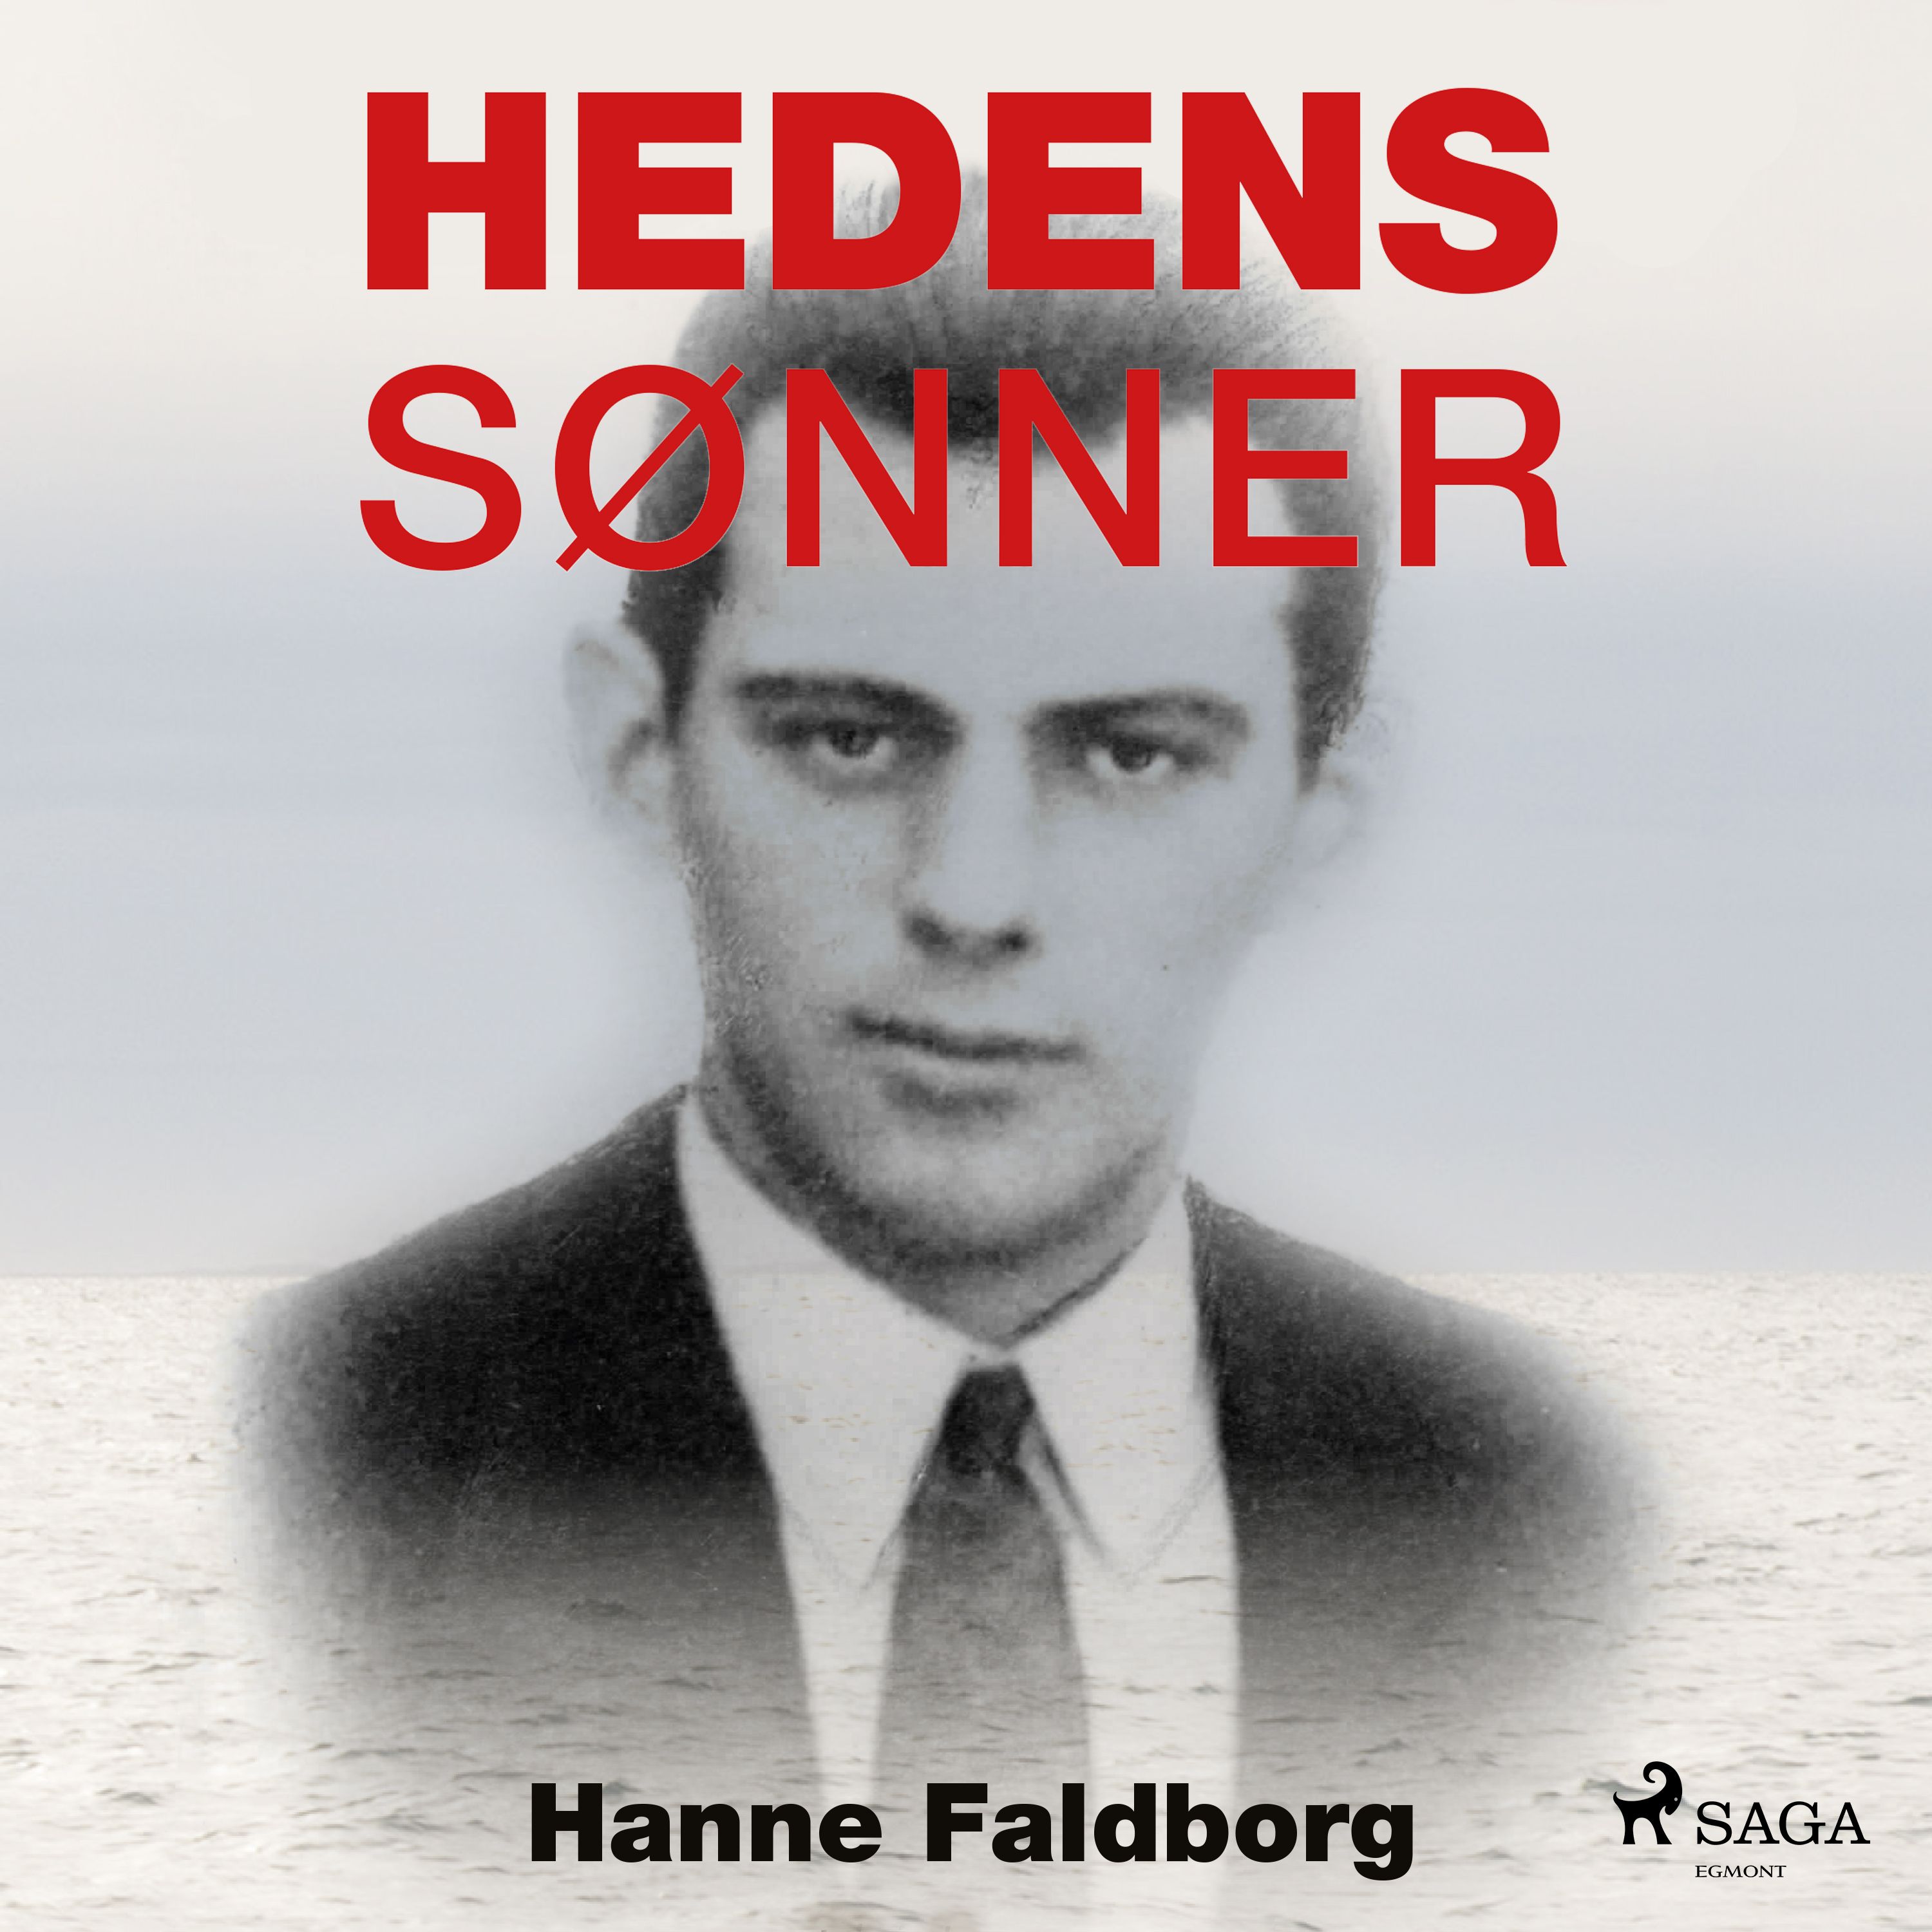 Hedens sønner, lydbog af Hanne Faldborg